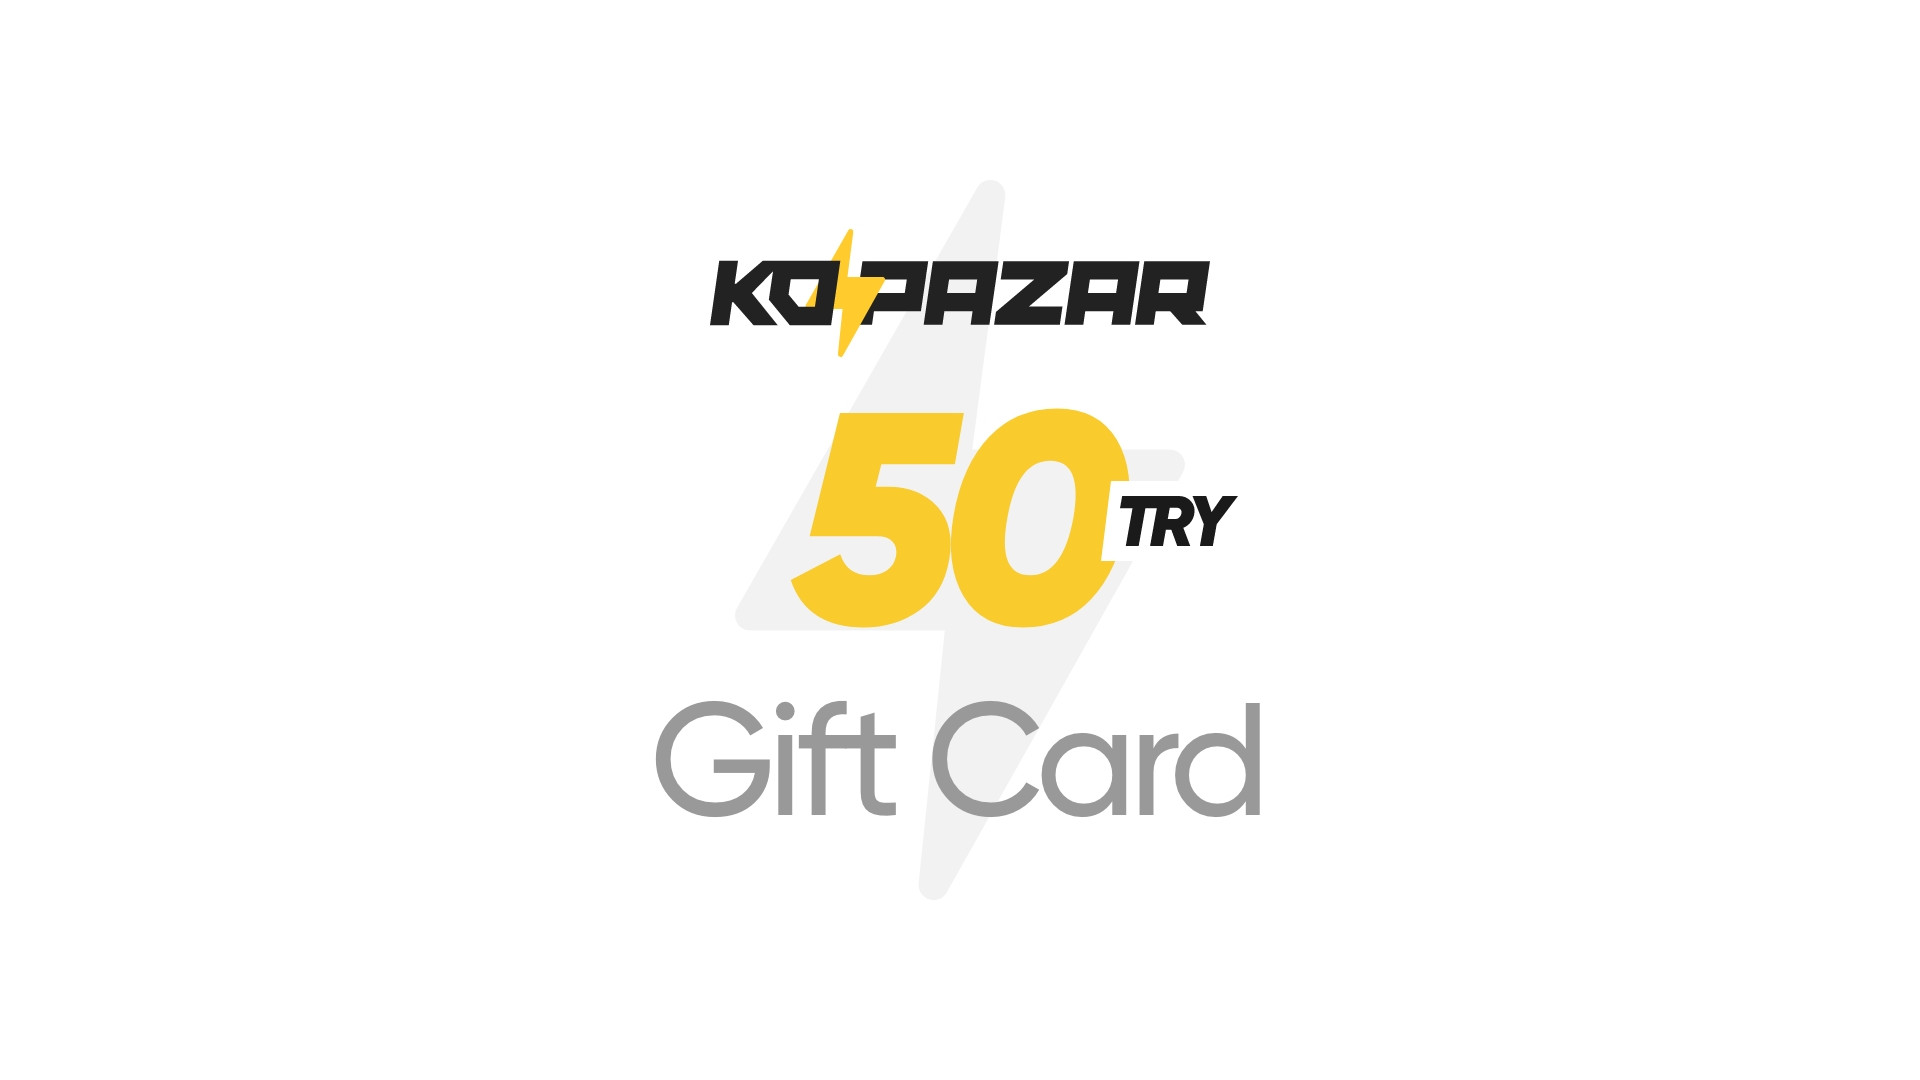 Kopazar 50 TRY Gift Card 2.09 $